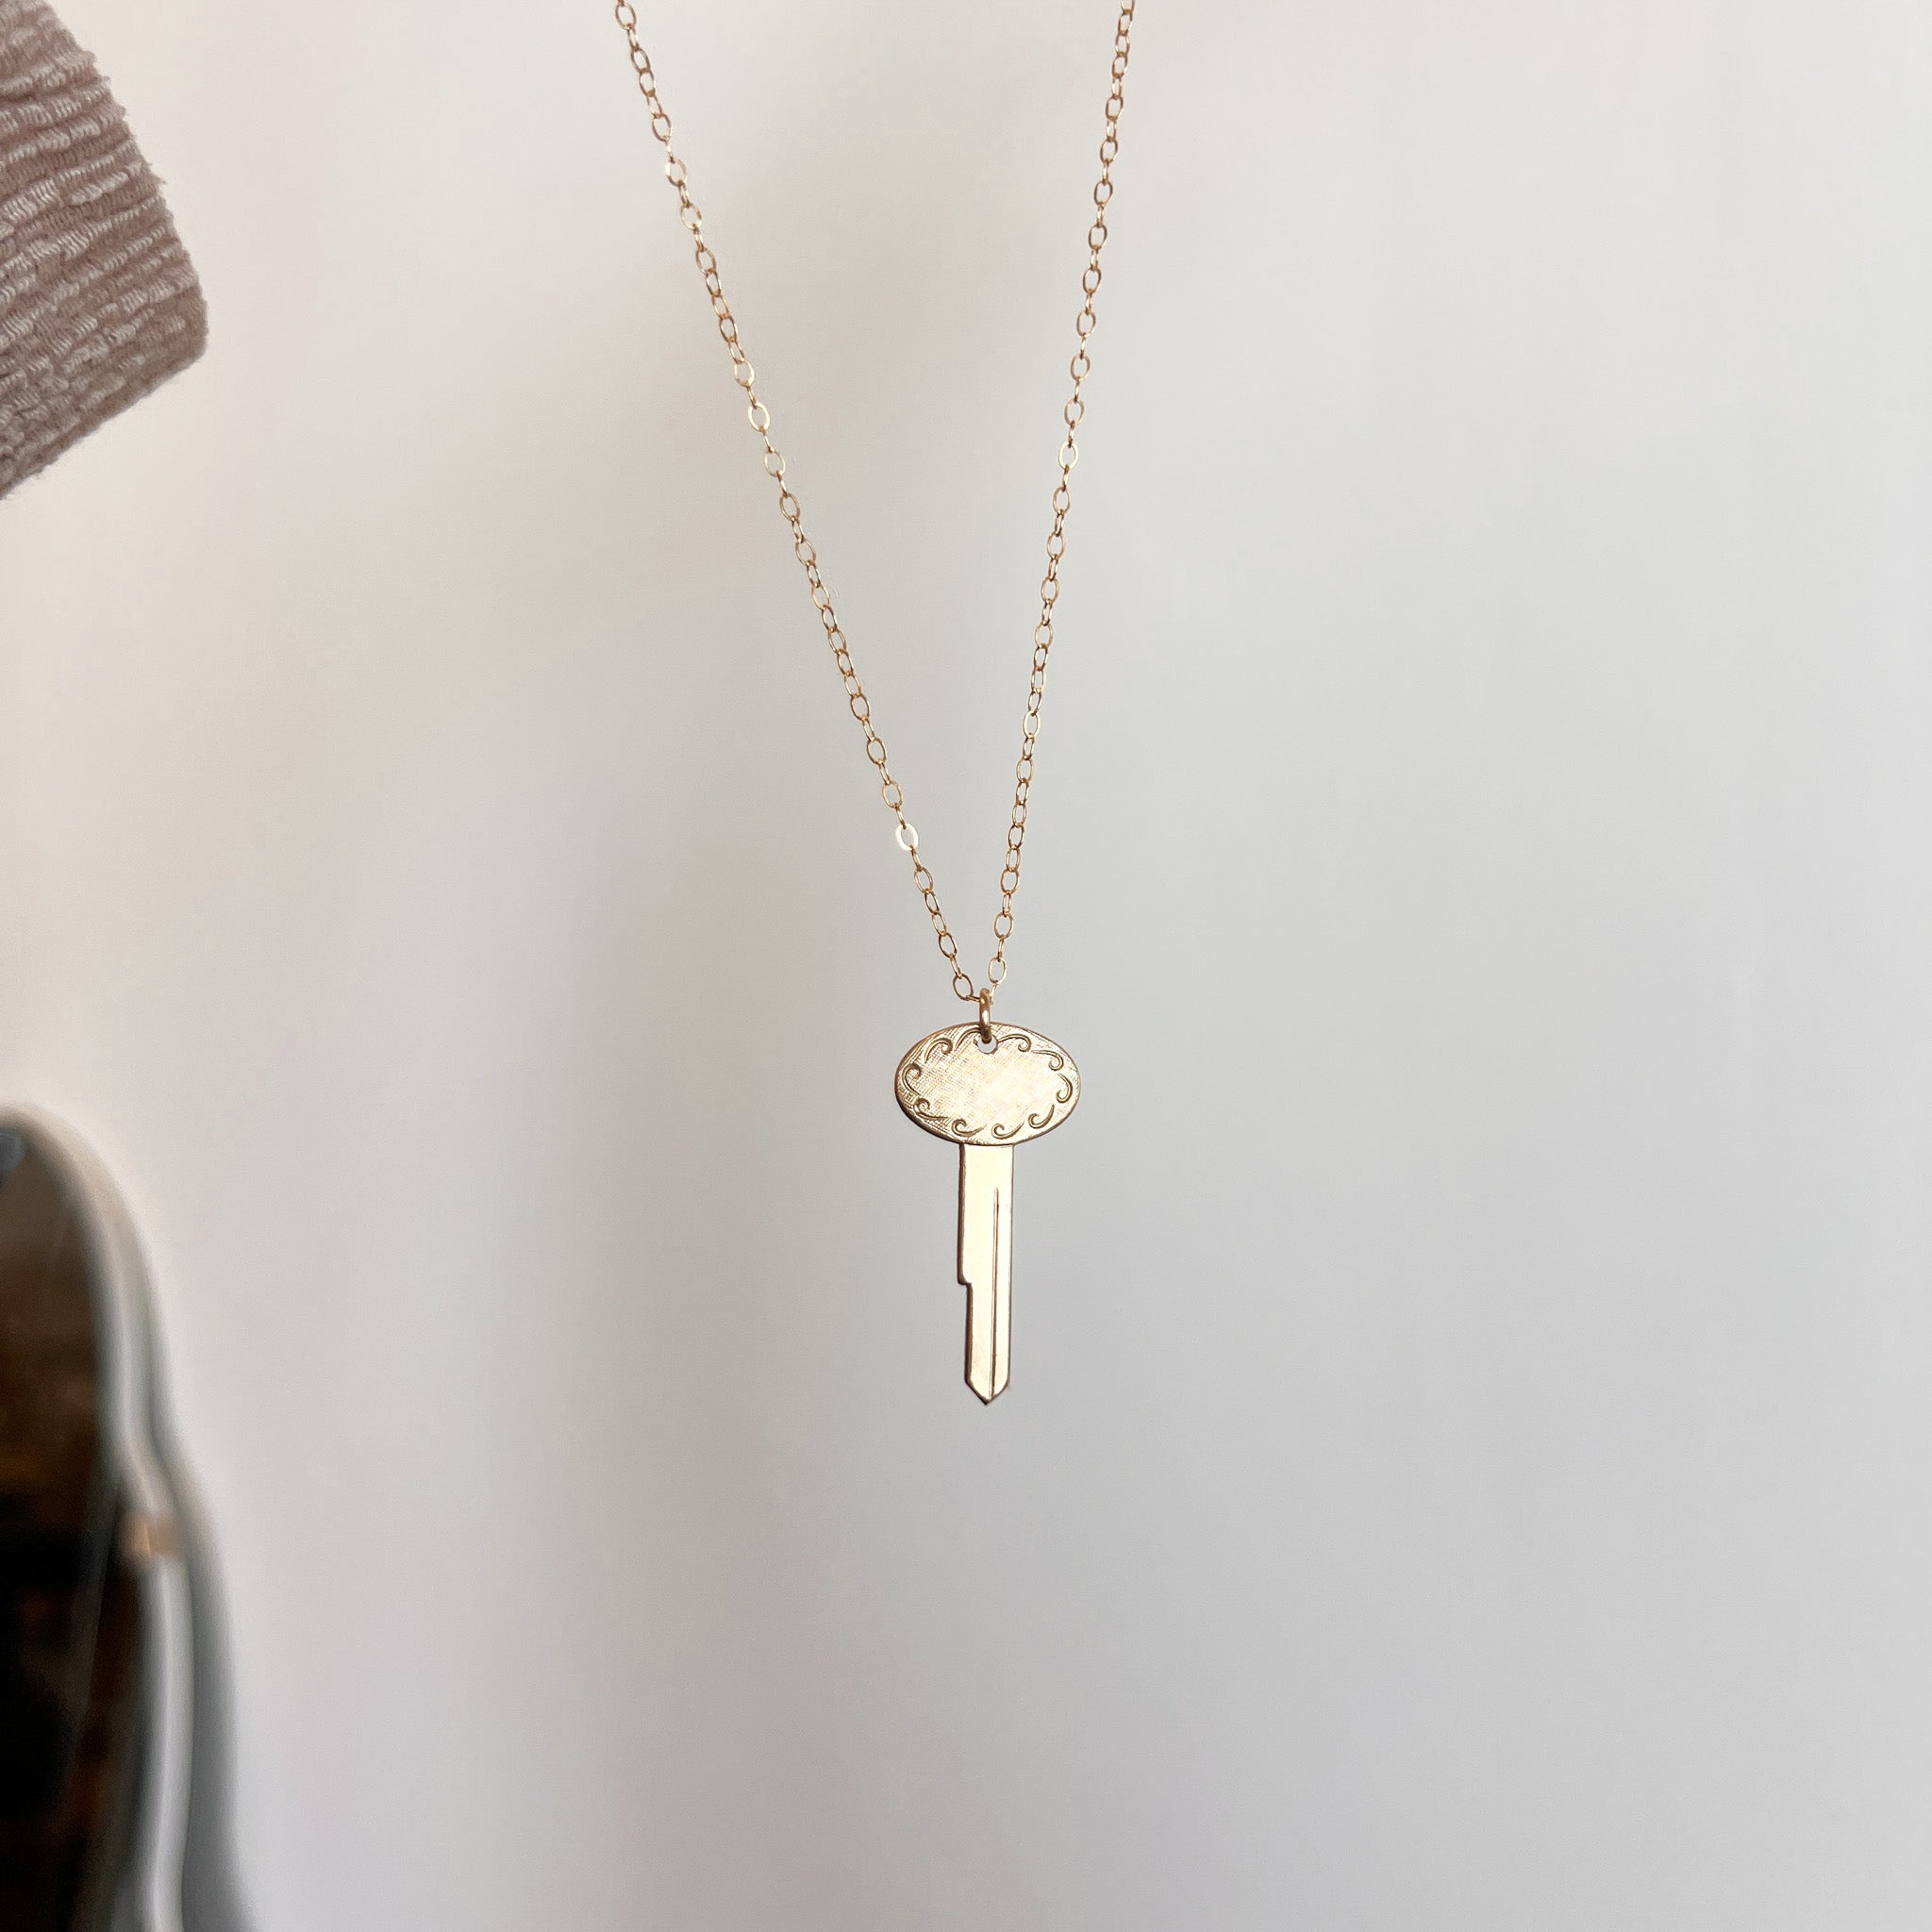 Vintage Oval Key Necklace